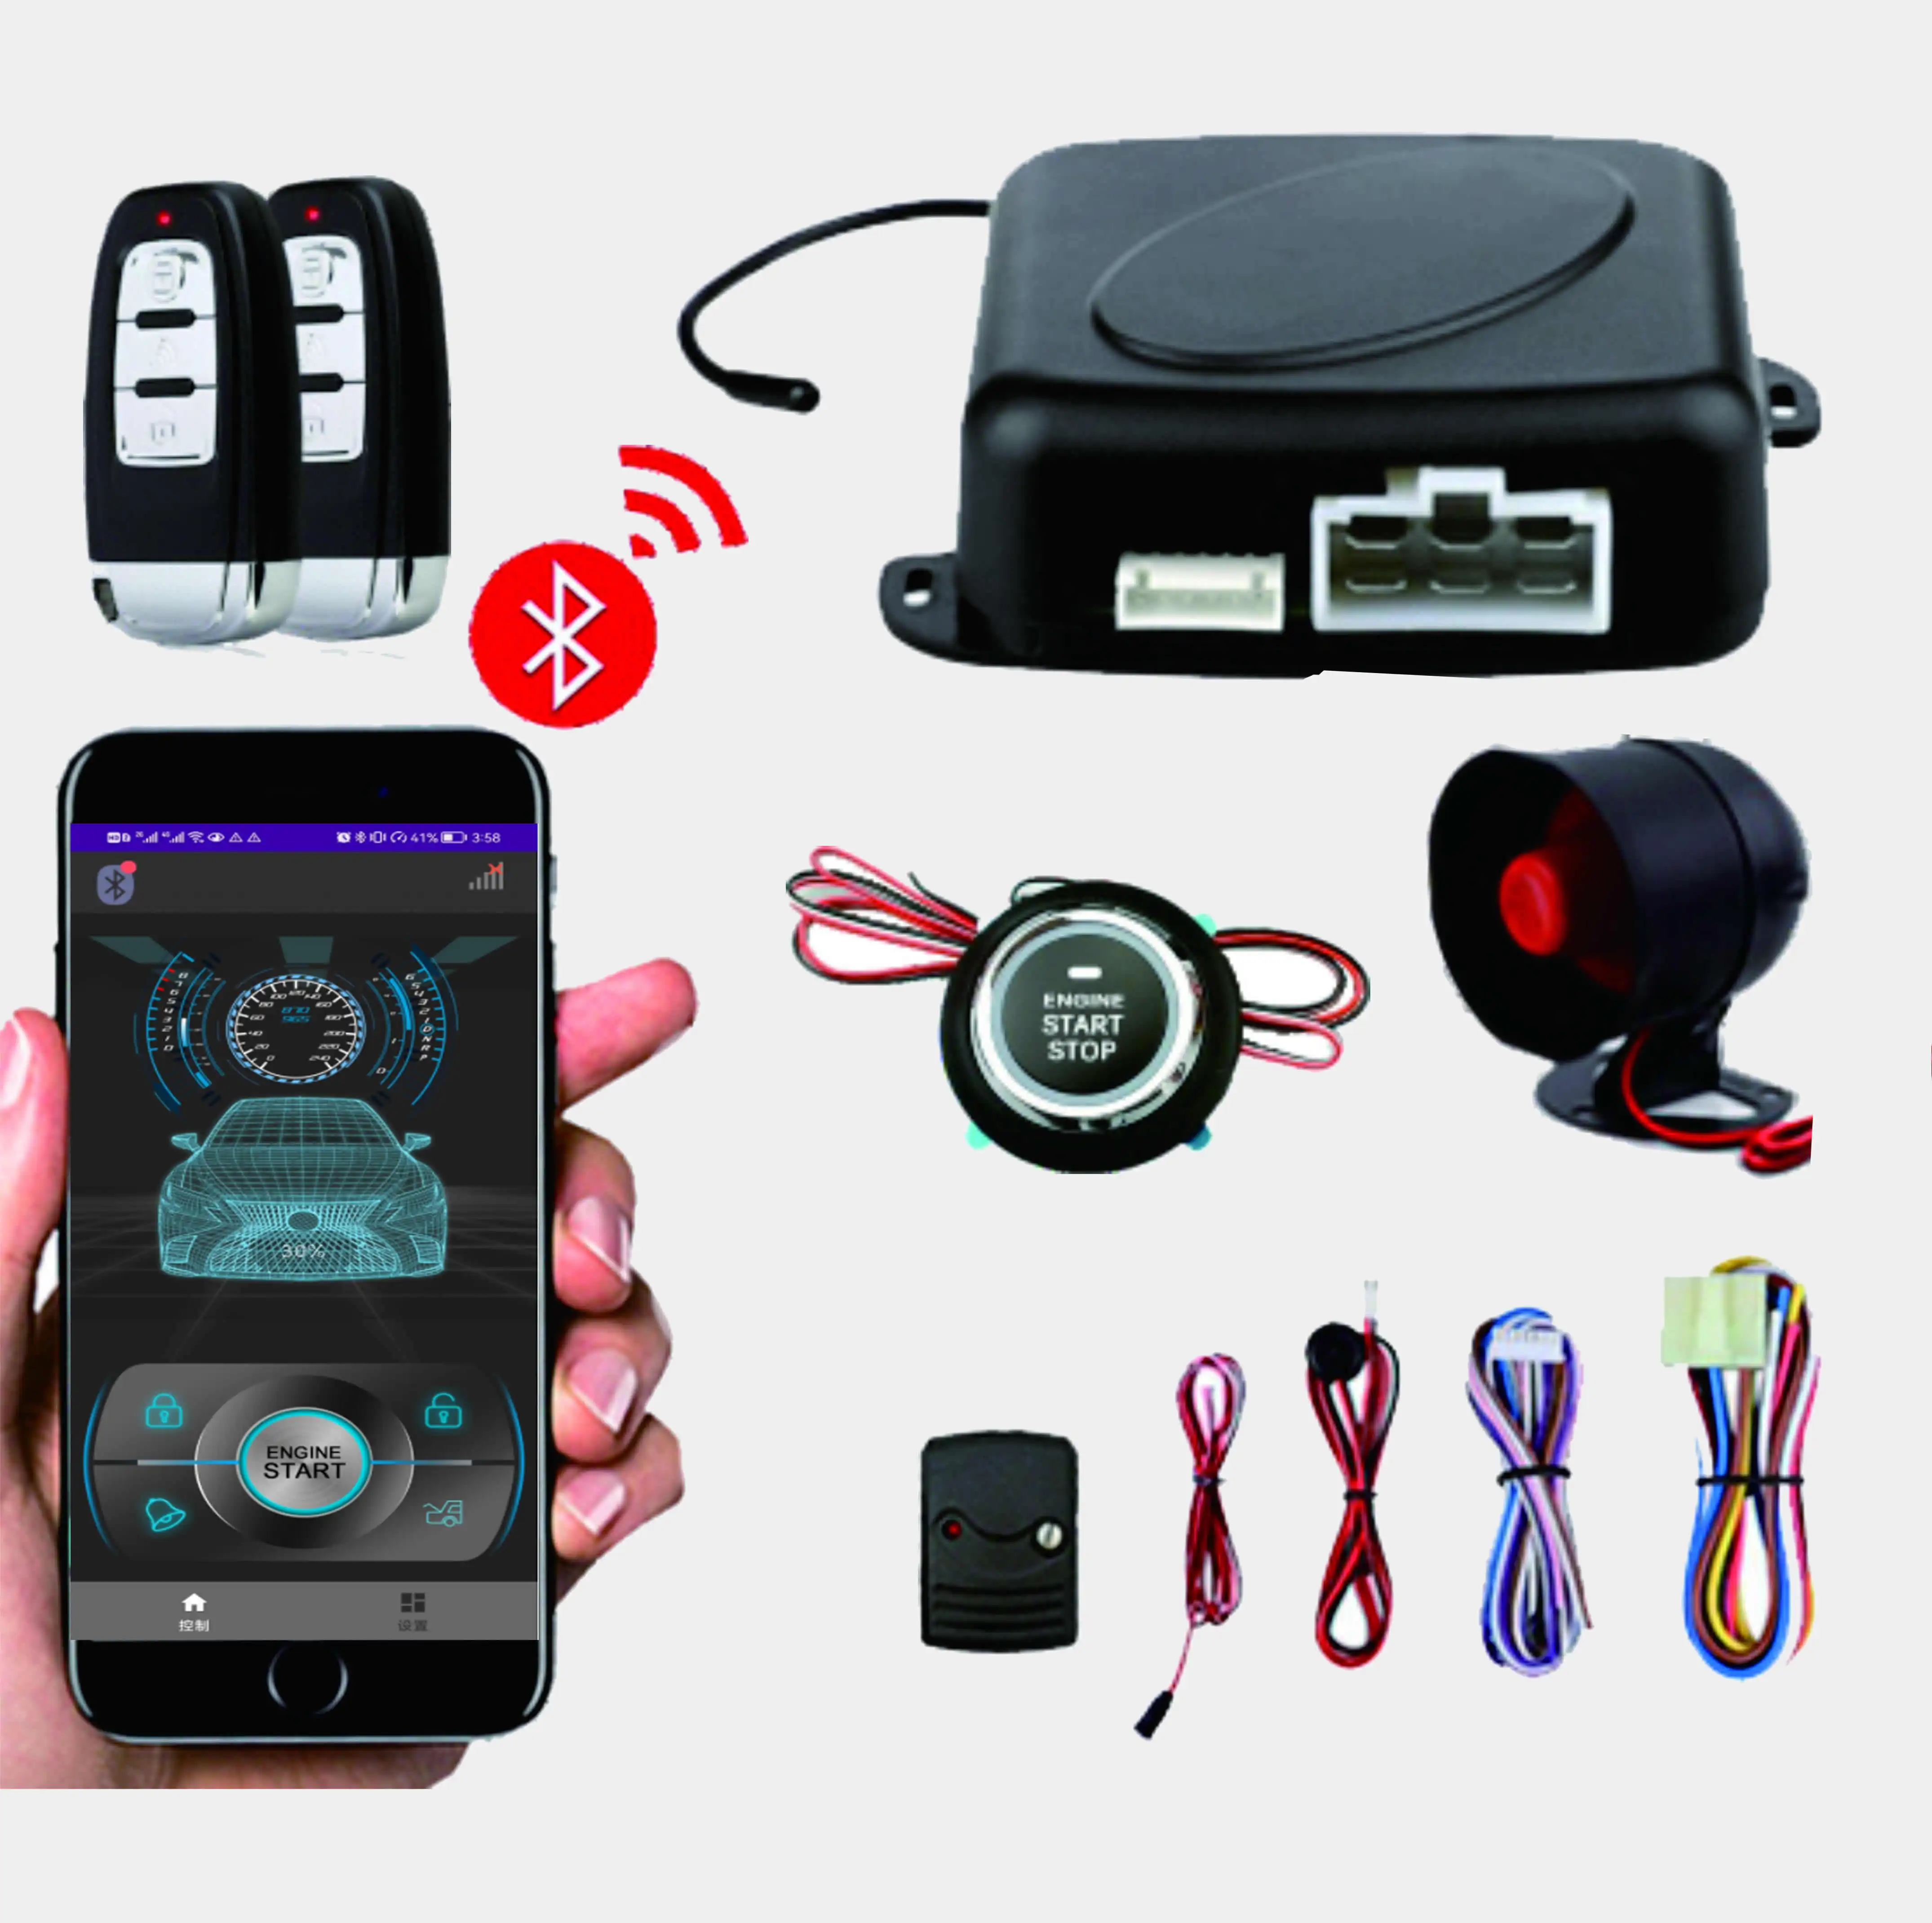 kleines telefon app steuerung pke push-start auto alarm system mit ferngesteuerter motor start